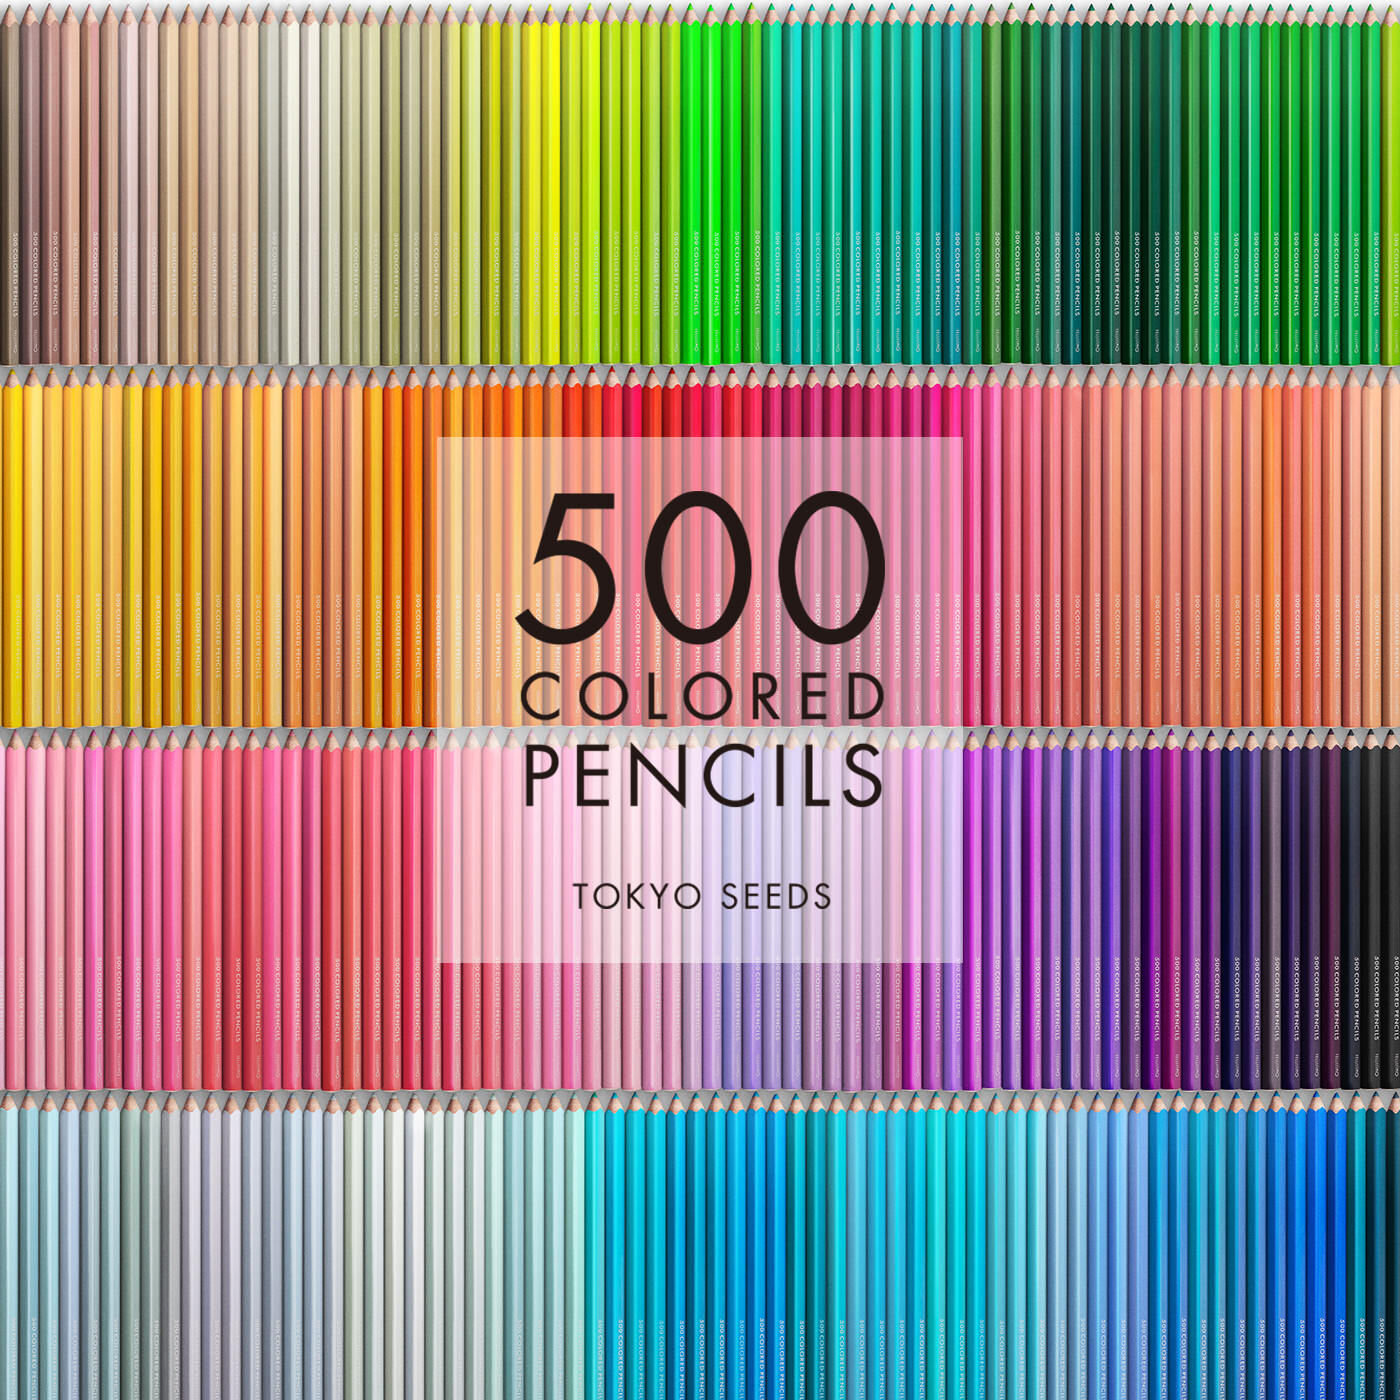 Real Stock|【269/500 BLUE HAWAIIAN】500色の色えんぴつ TOKYO SEEDS|1992年、世界初の「500色」という膨大な色数の色えんぴつが誕生して以来、その販売数は発売当初から合わせると、世界55ヵ国10万セット以上。今回、メイド・イン・ジャパンにこだわり、すべてが新しく生まれ変わって登場しました。